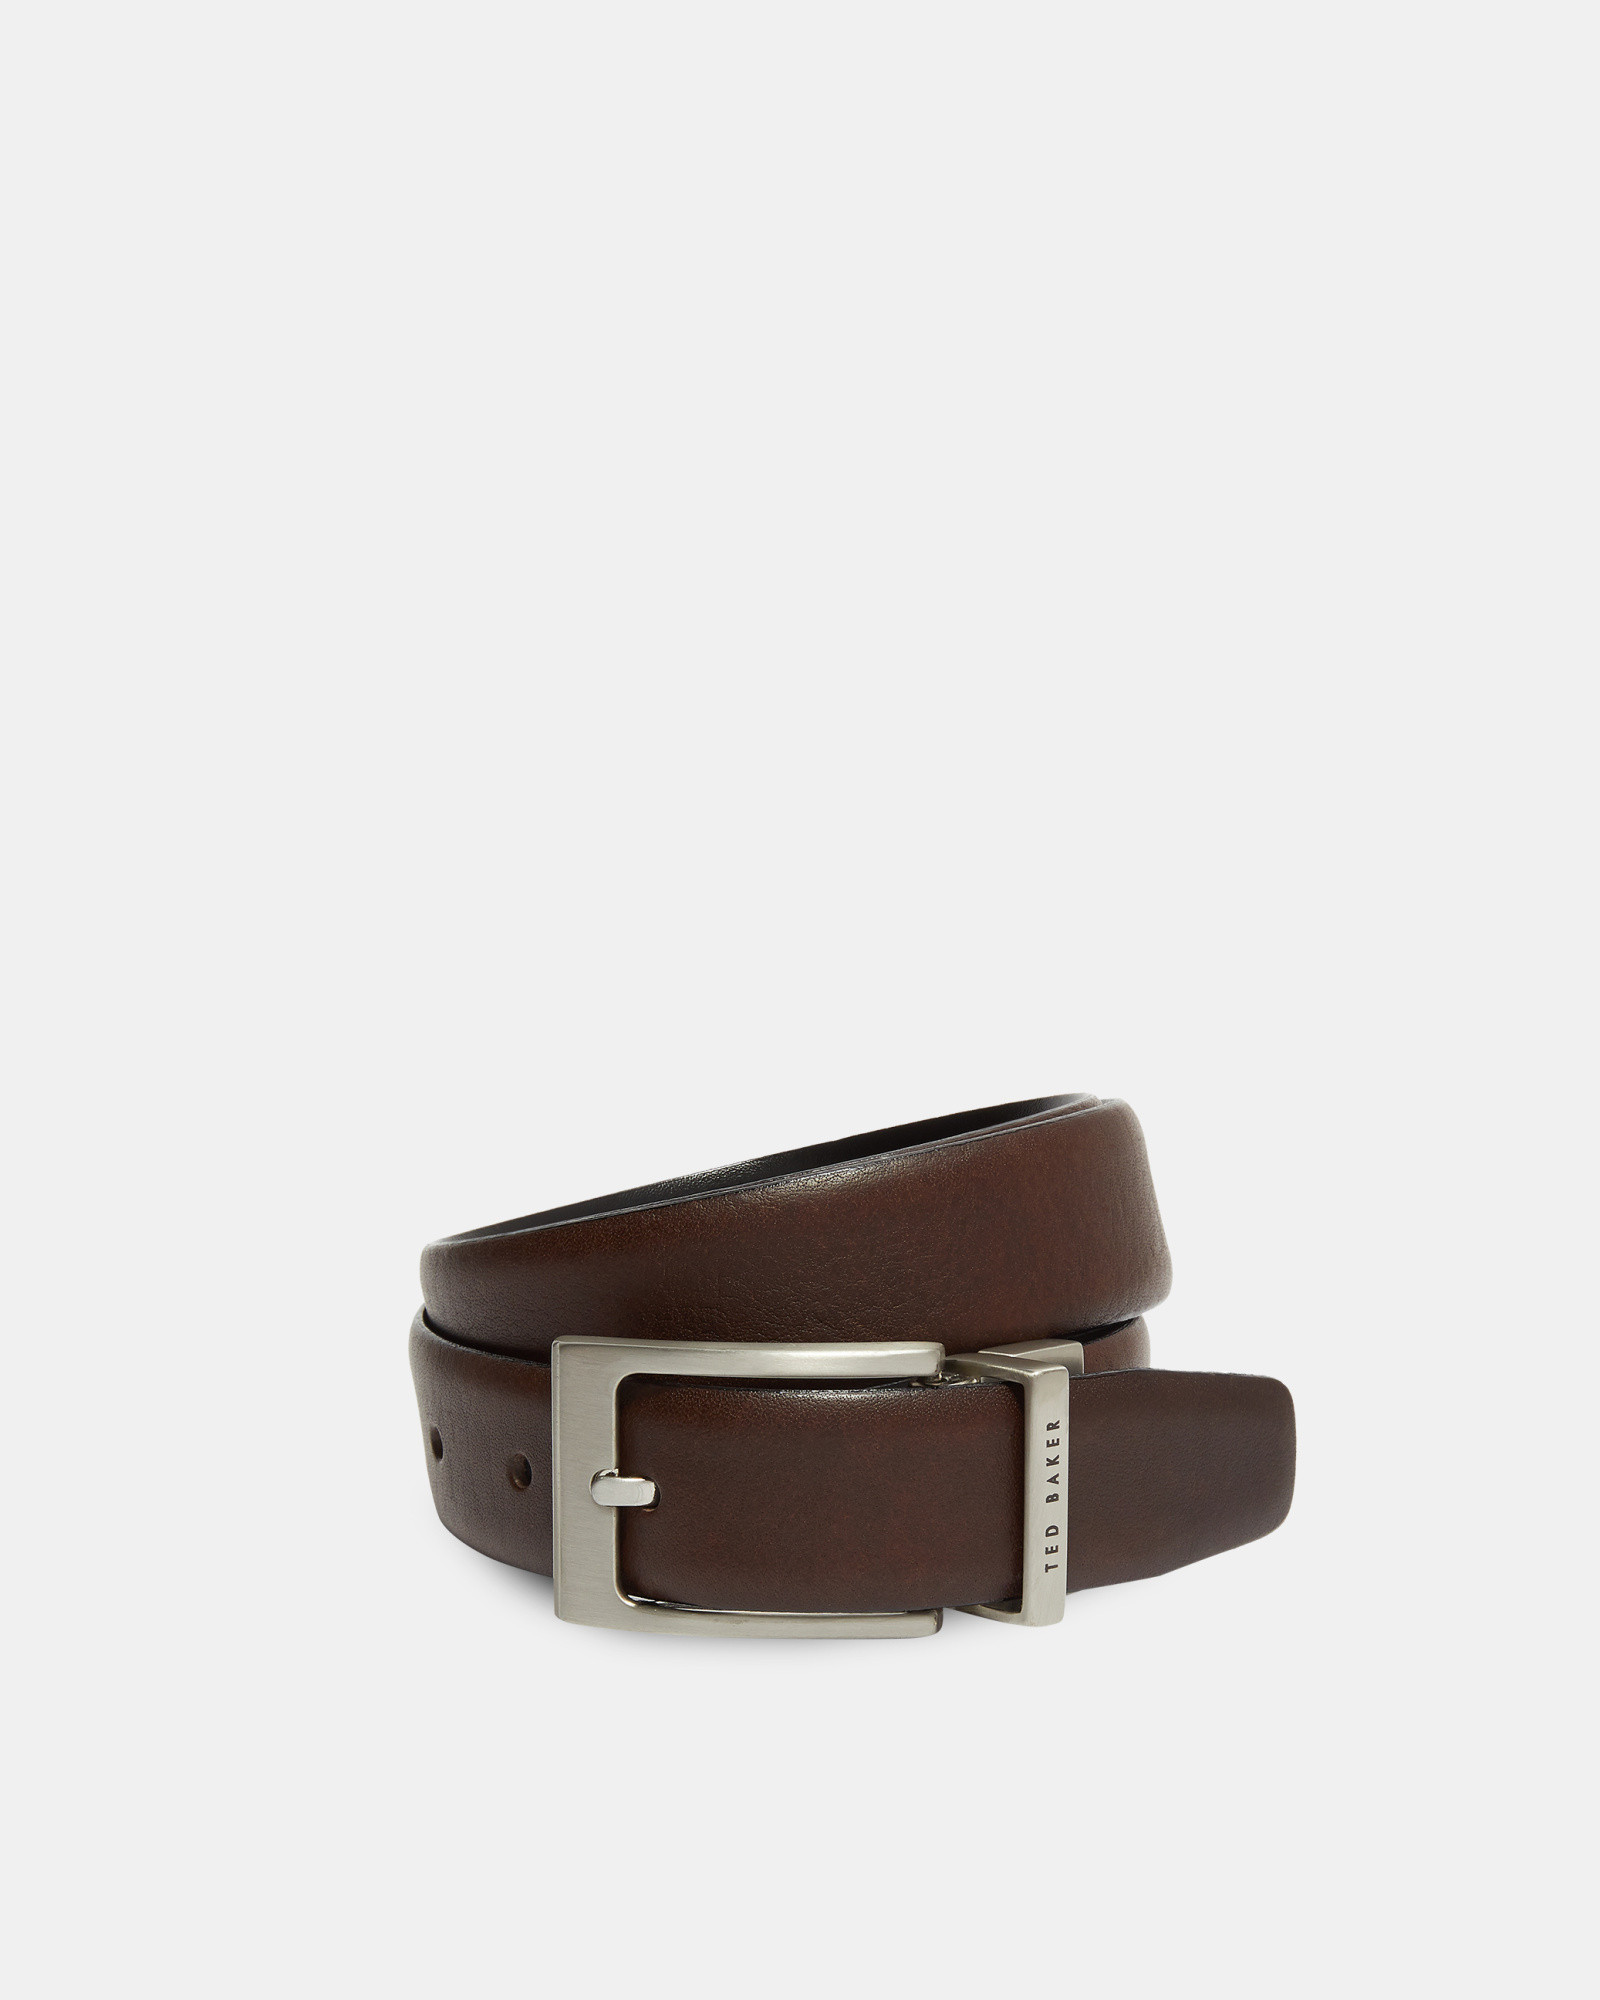 KARMER Reversible leather belt